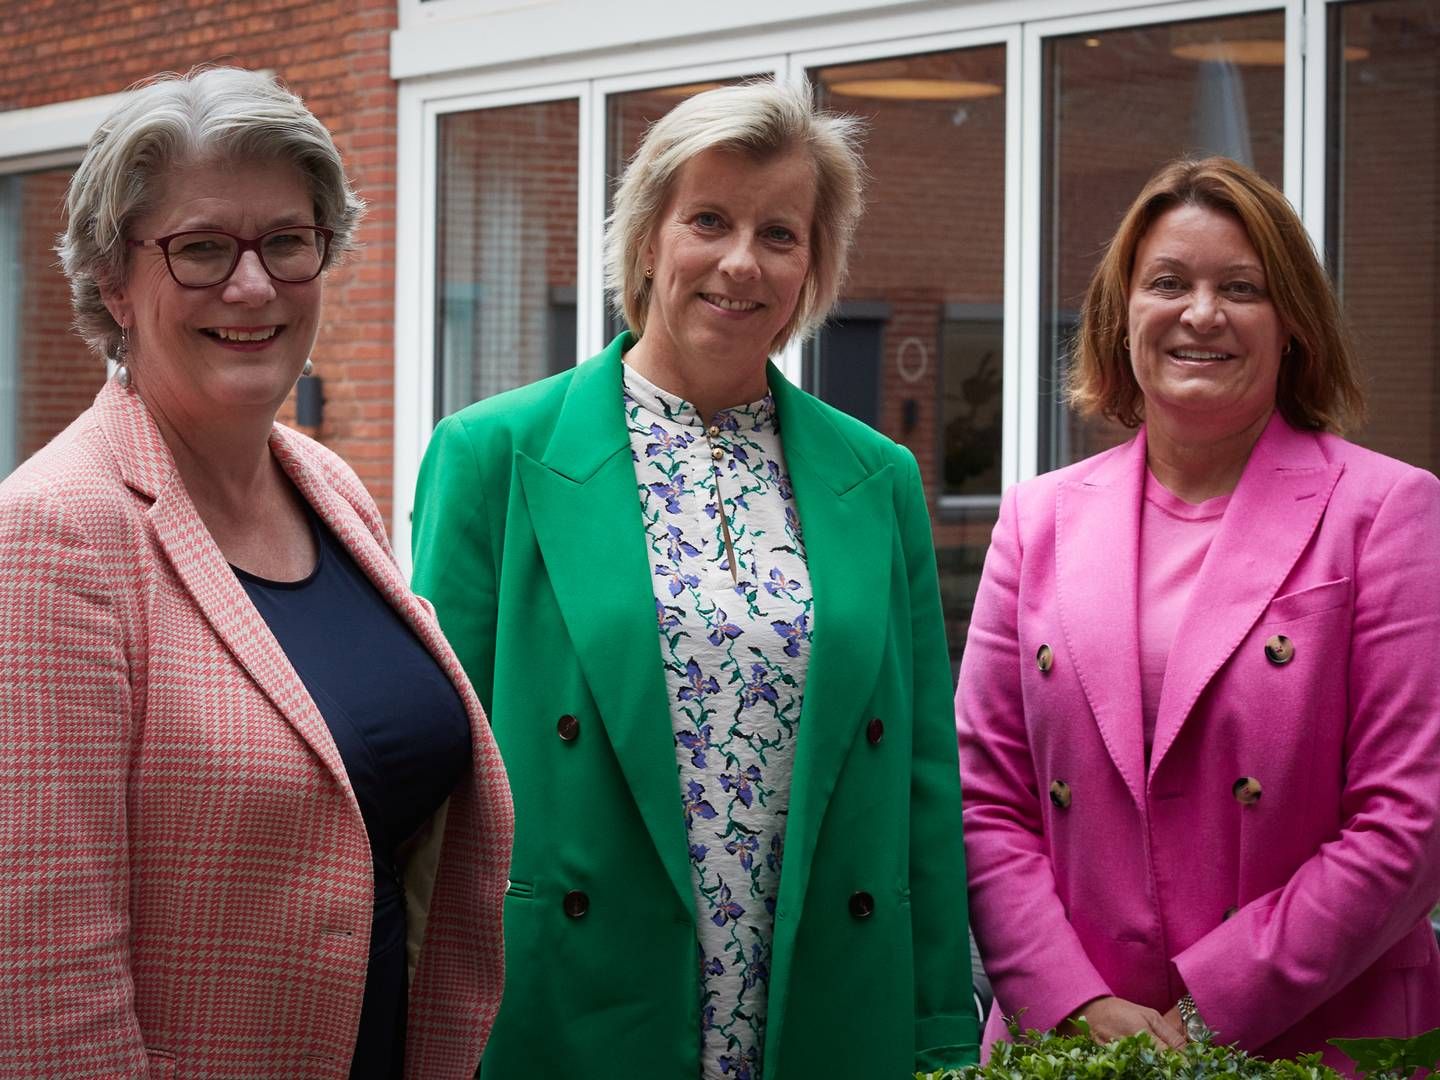 Gitte Lillelund Bech, Vibeke Bendix Didriksen og Henriette Dræbye Rosenquist er nye medlemmer af kvindenetværket Wilds bestyrelse. | Foto: Wild / Pr